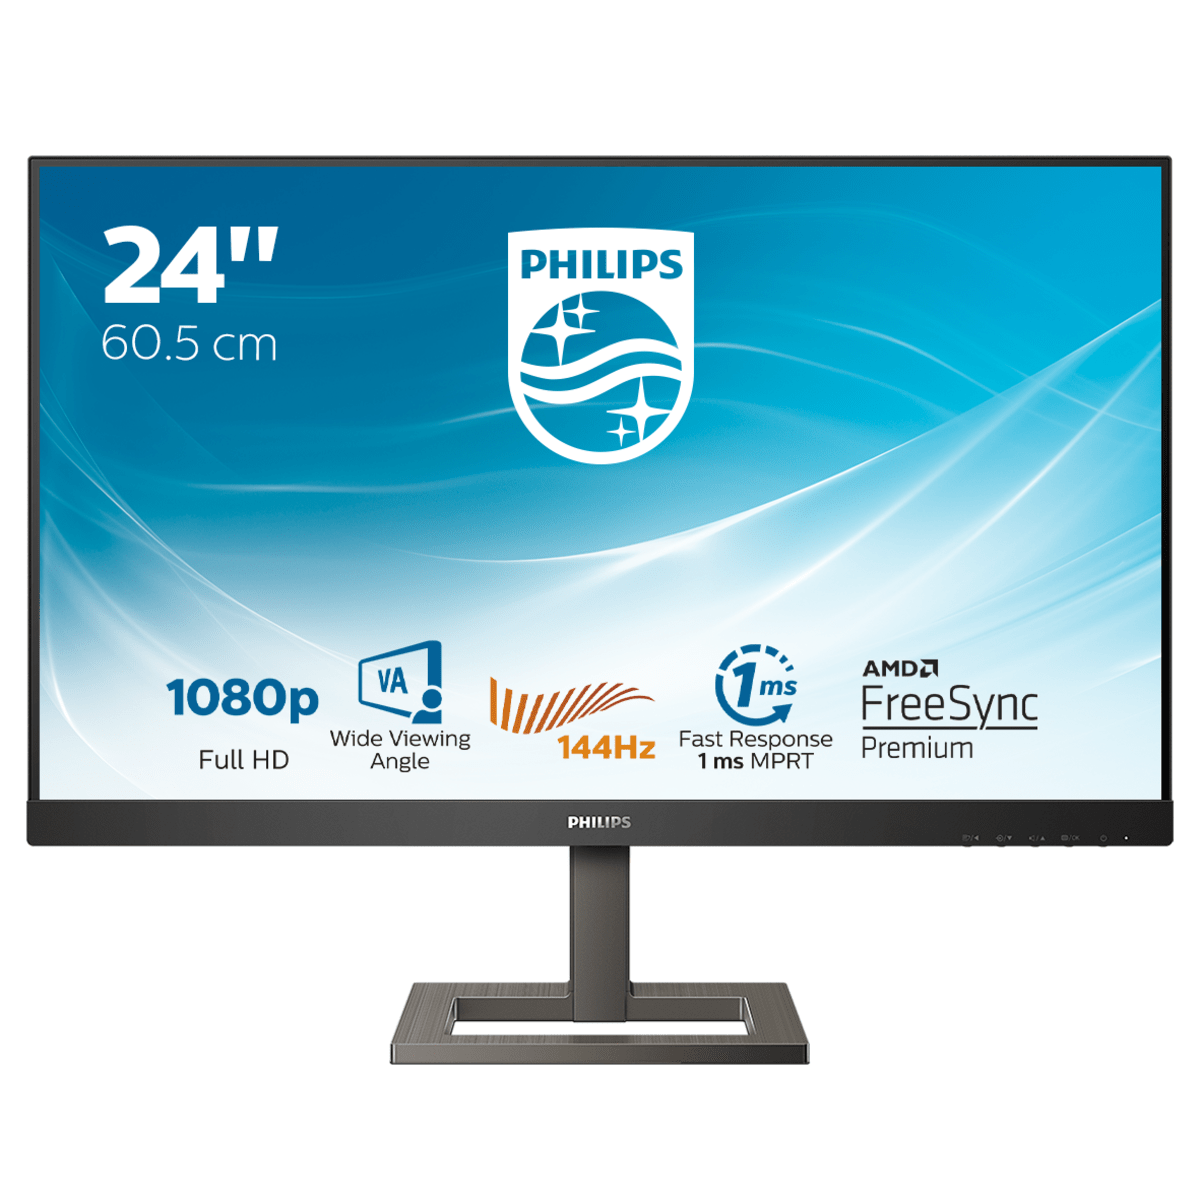 24" Игровой монитор Philips 242E1GAEZ в официальном интернет магазине AGONBYAOC.ru (AOC Россия)